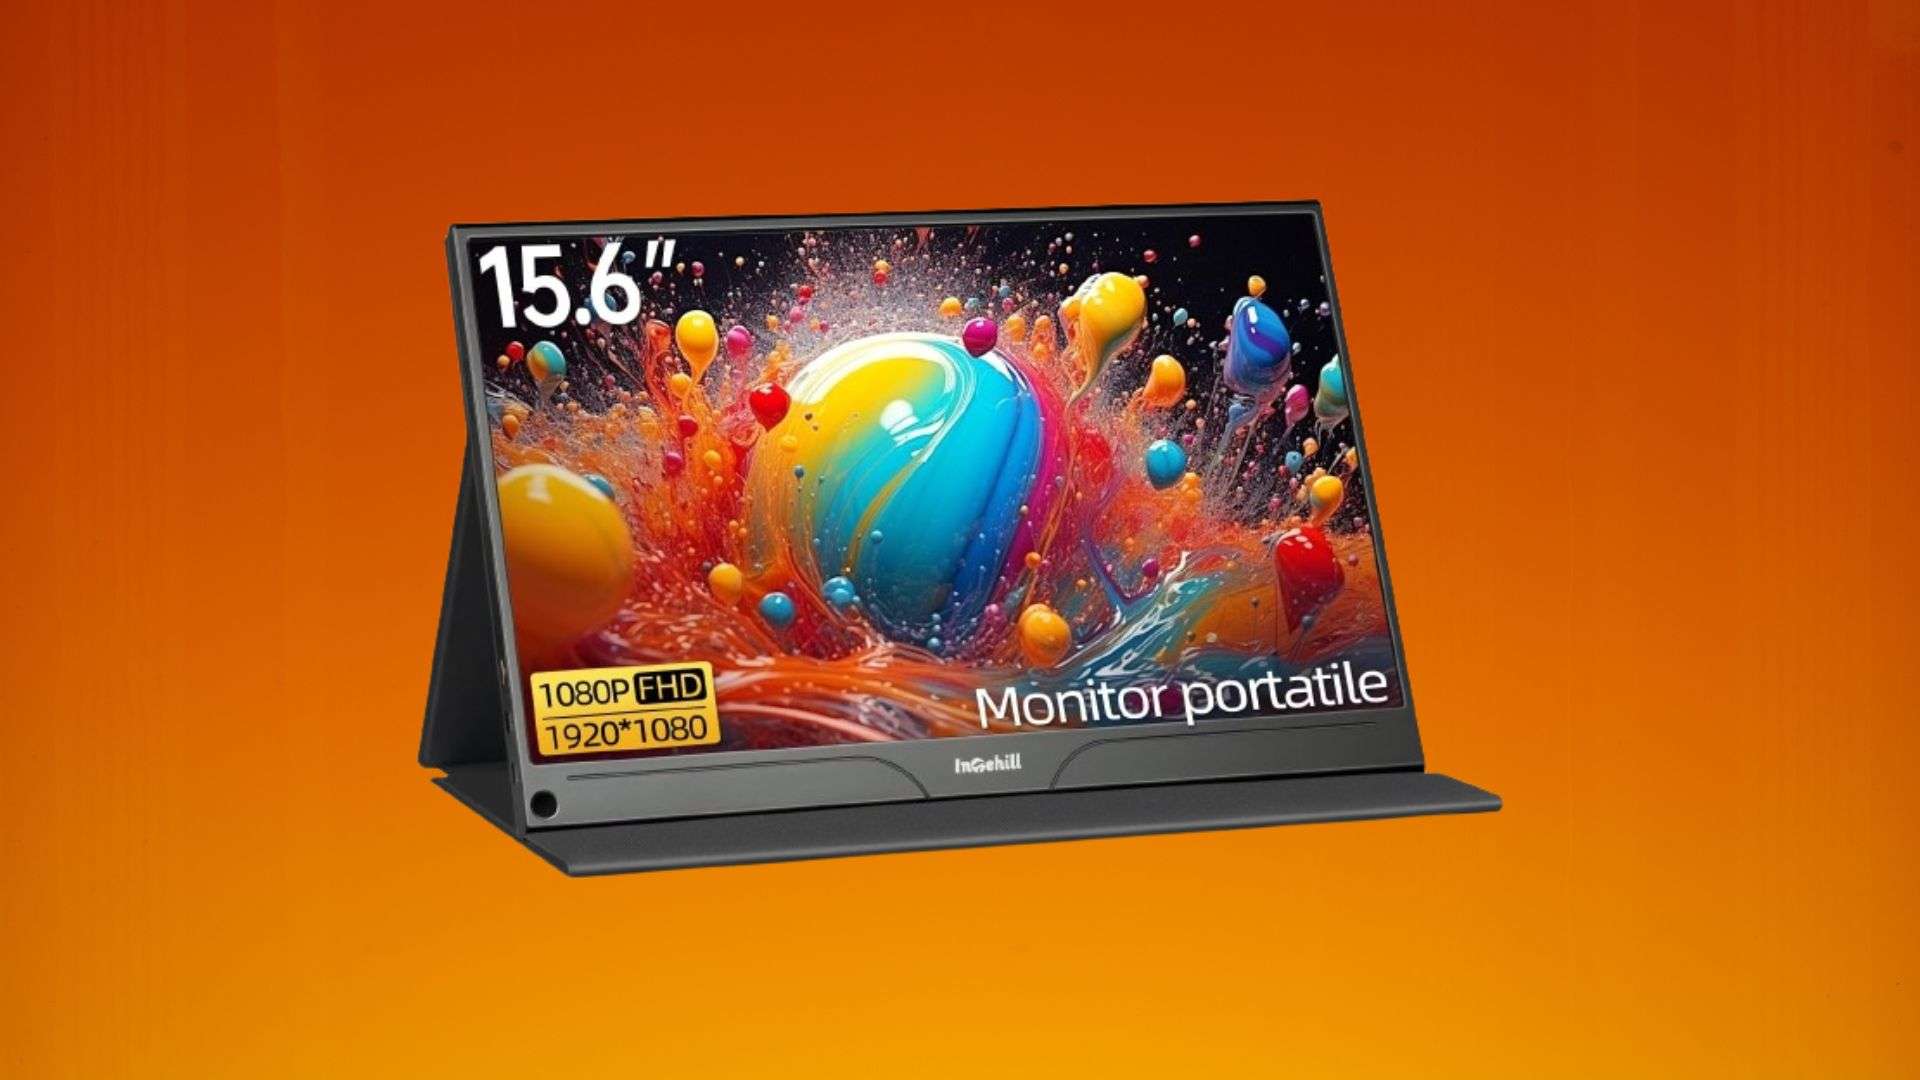 monitor-portatile-da-15-6-in-offerta-a-meno-di-90-si-collega-al-laptop-o-alla-power-bank